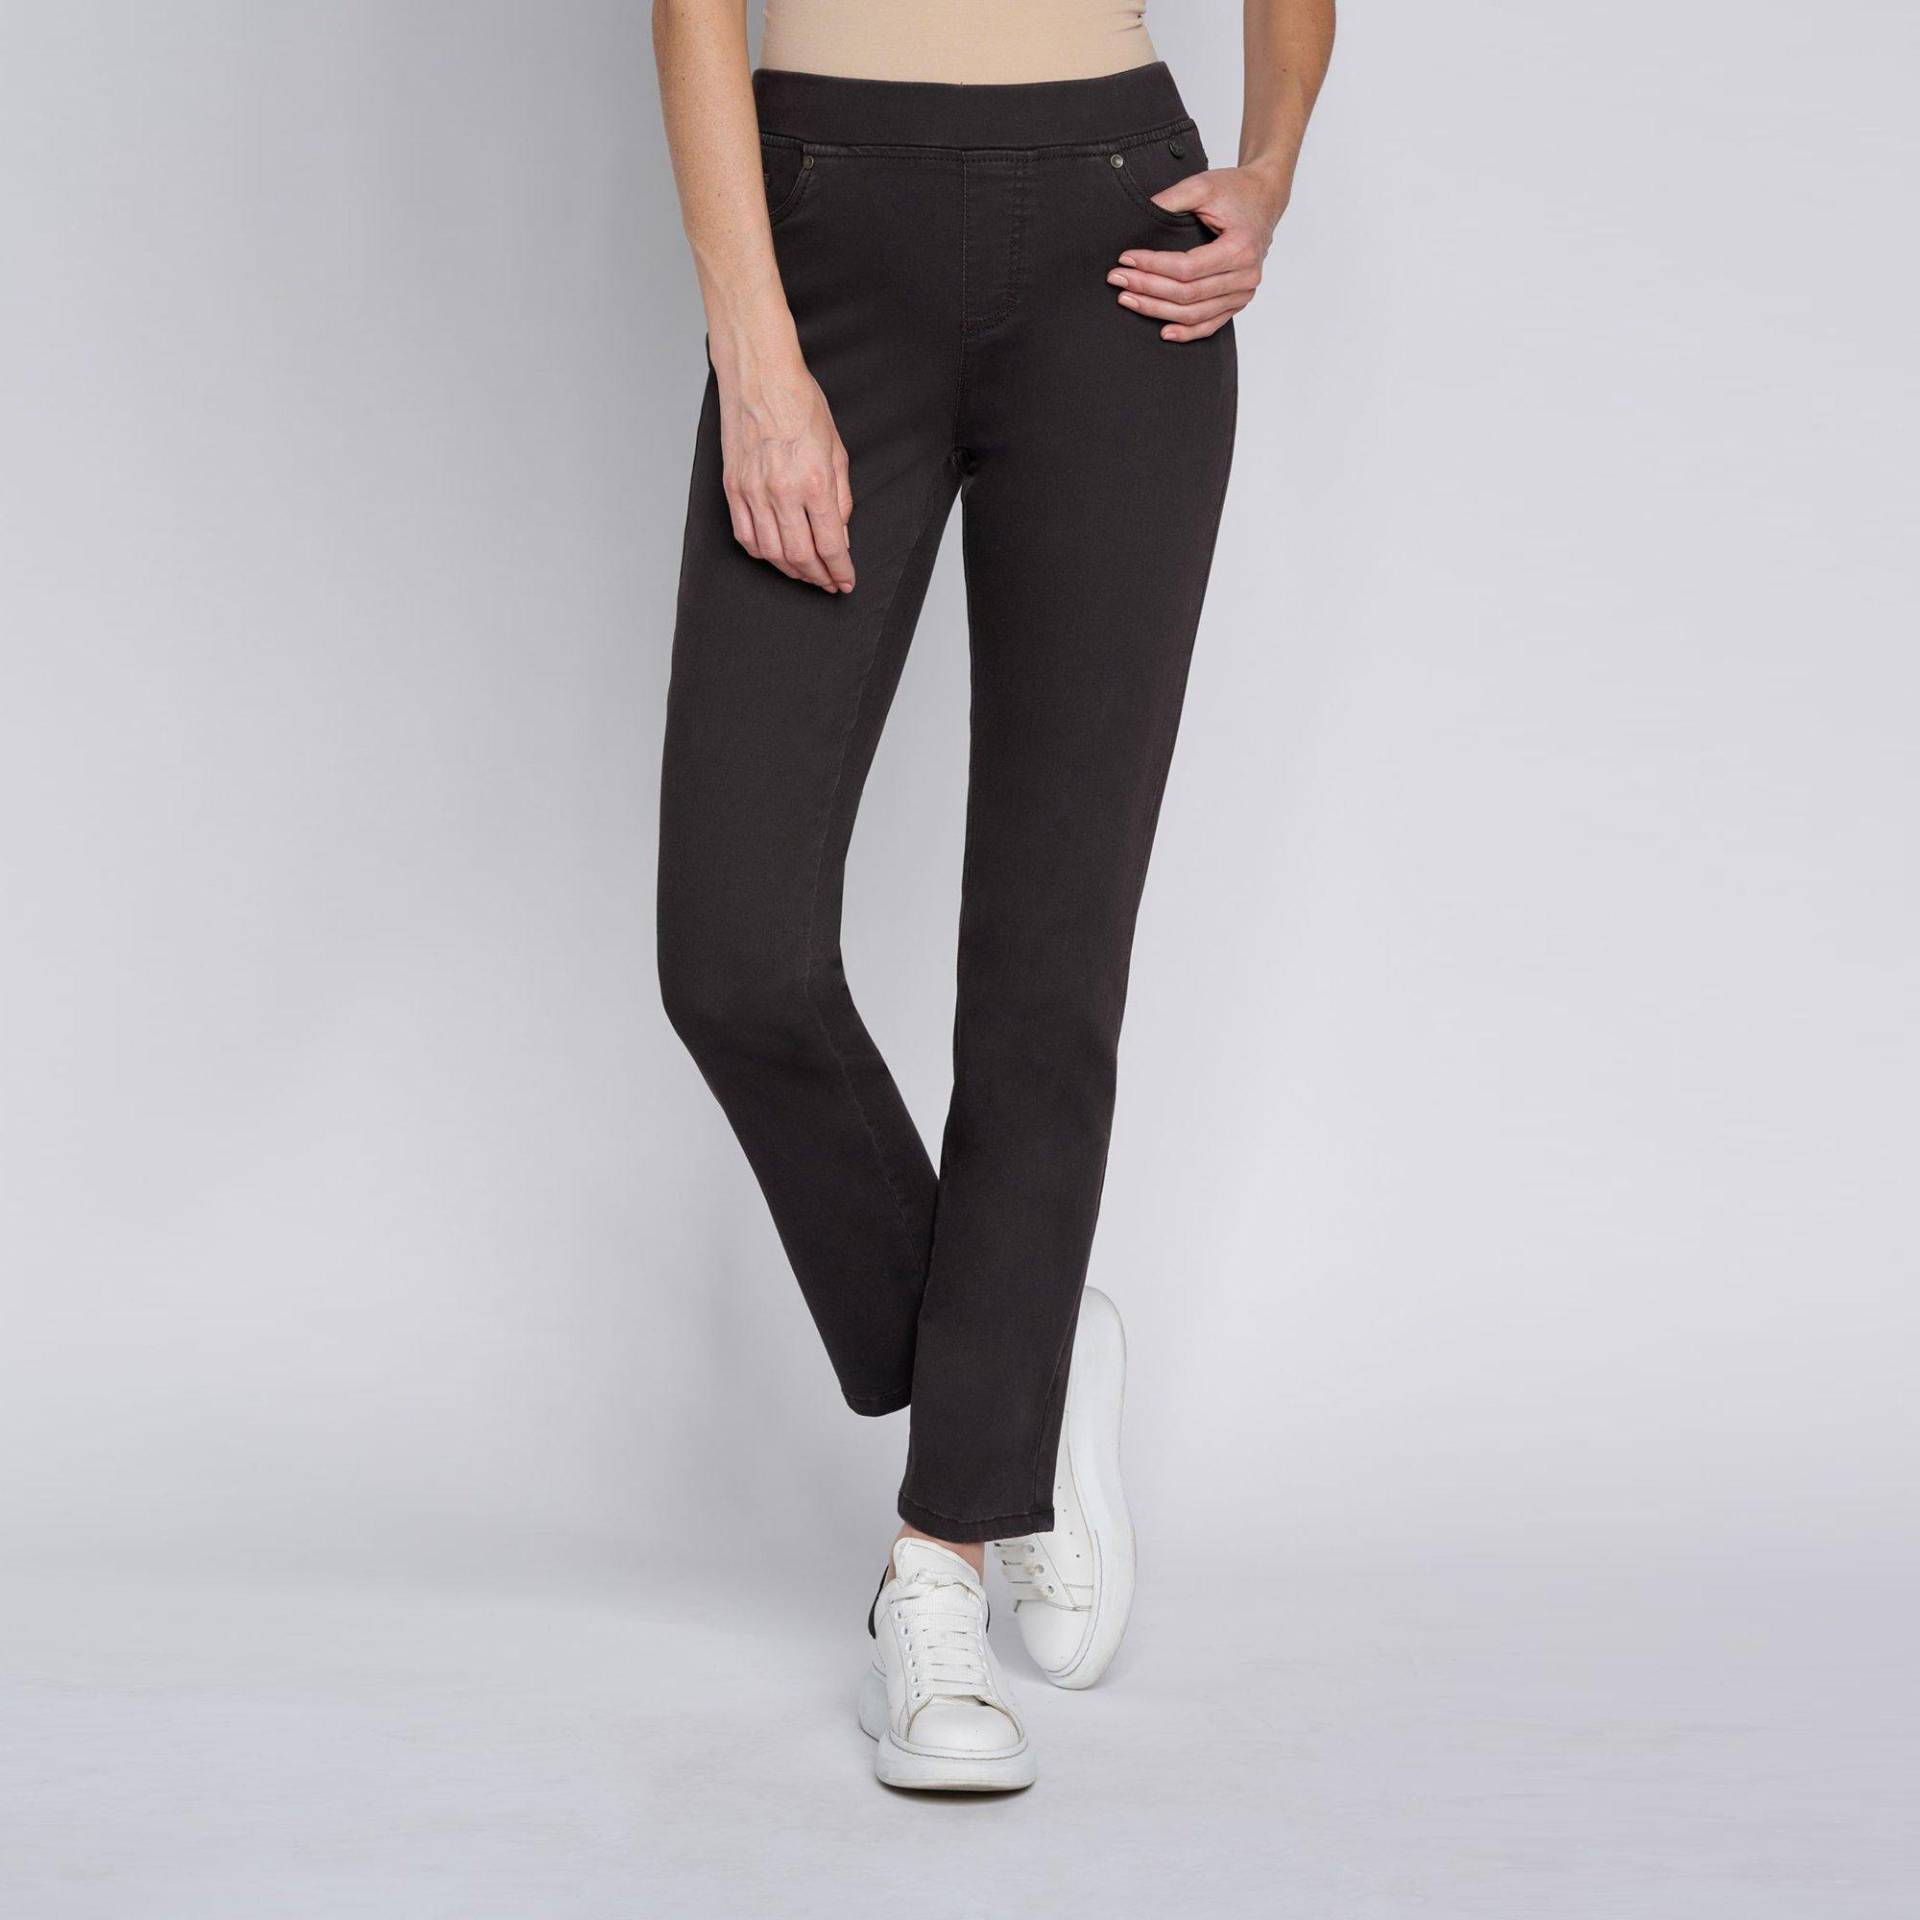 Jeans, Slim Fit Damen Black 46 von ANNA MONTANA